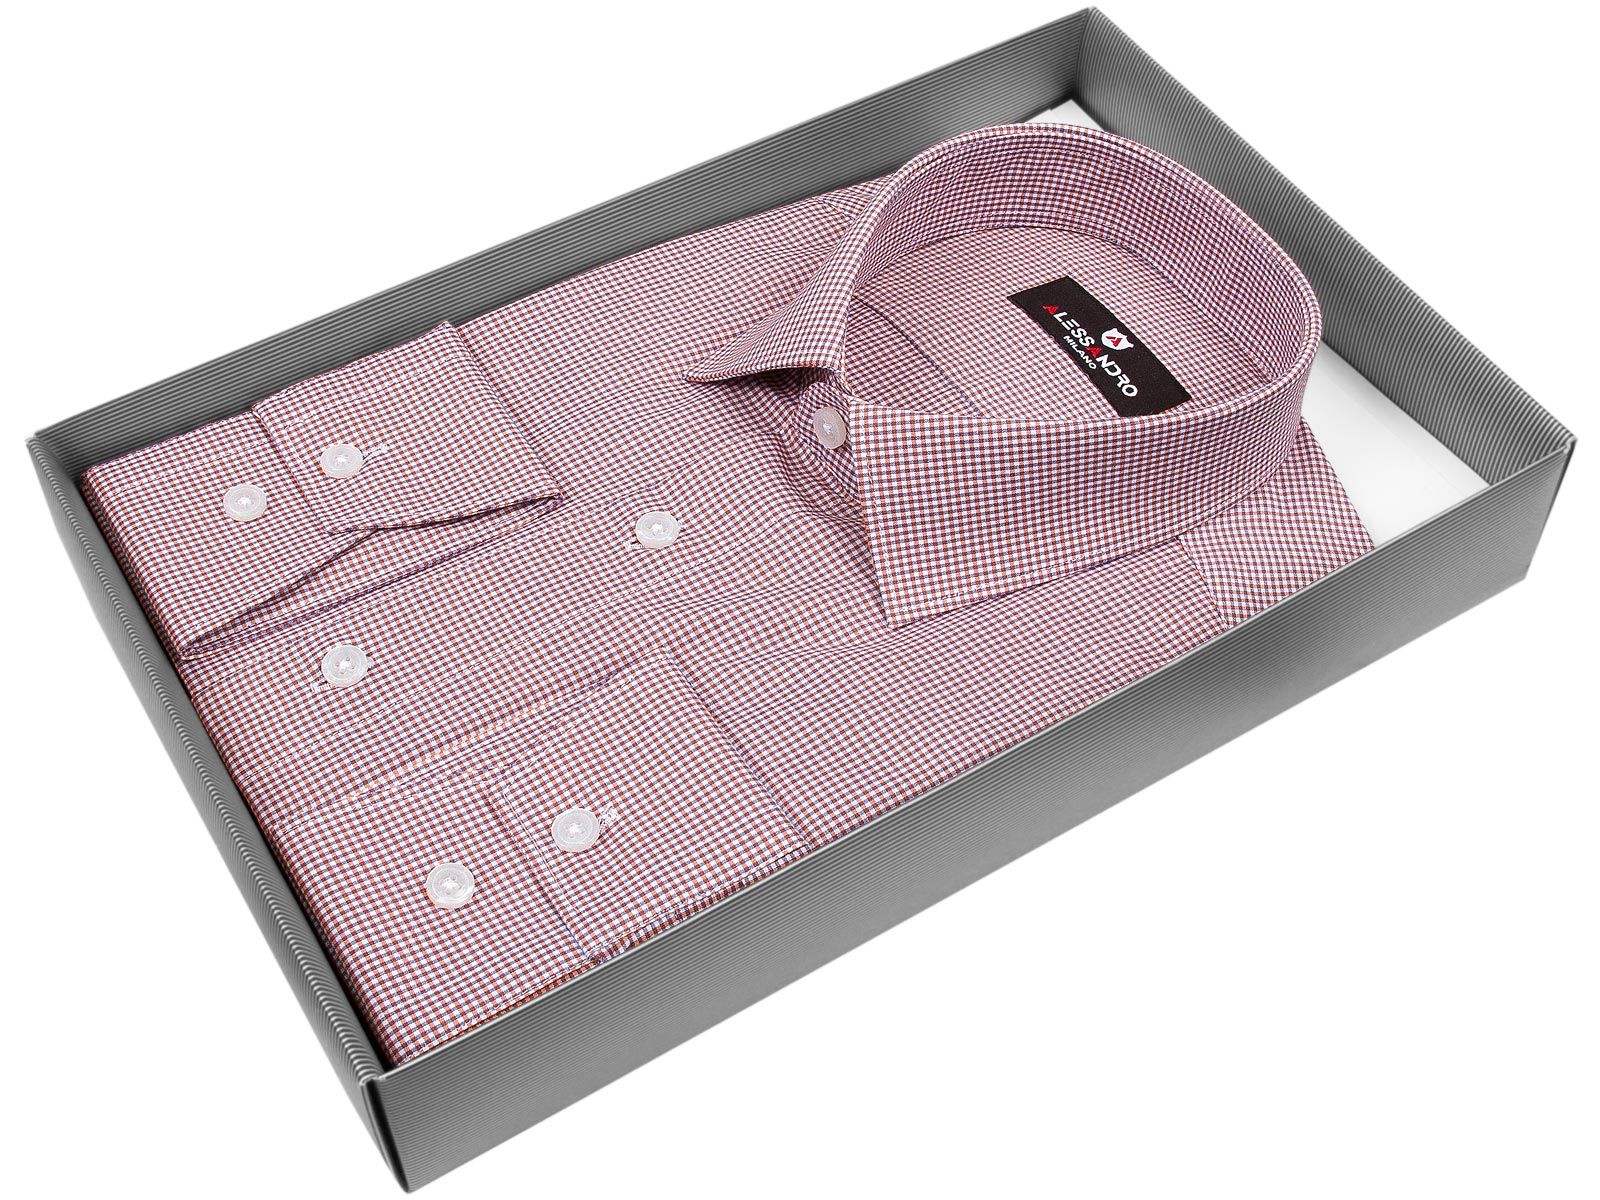 Бледно-бордовая приталенная мужская рубашка Alessandro Milano 1100-05 в клетку с длинными рукавами купить в Москве недорого